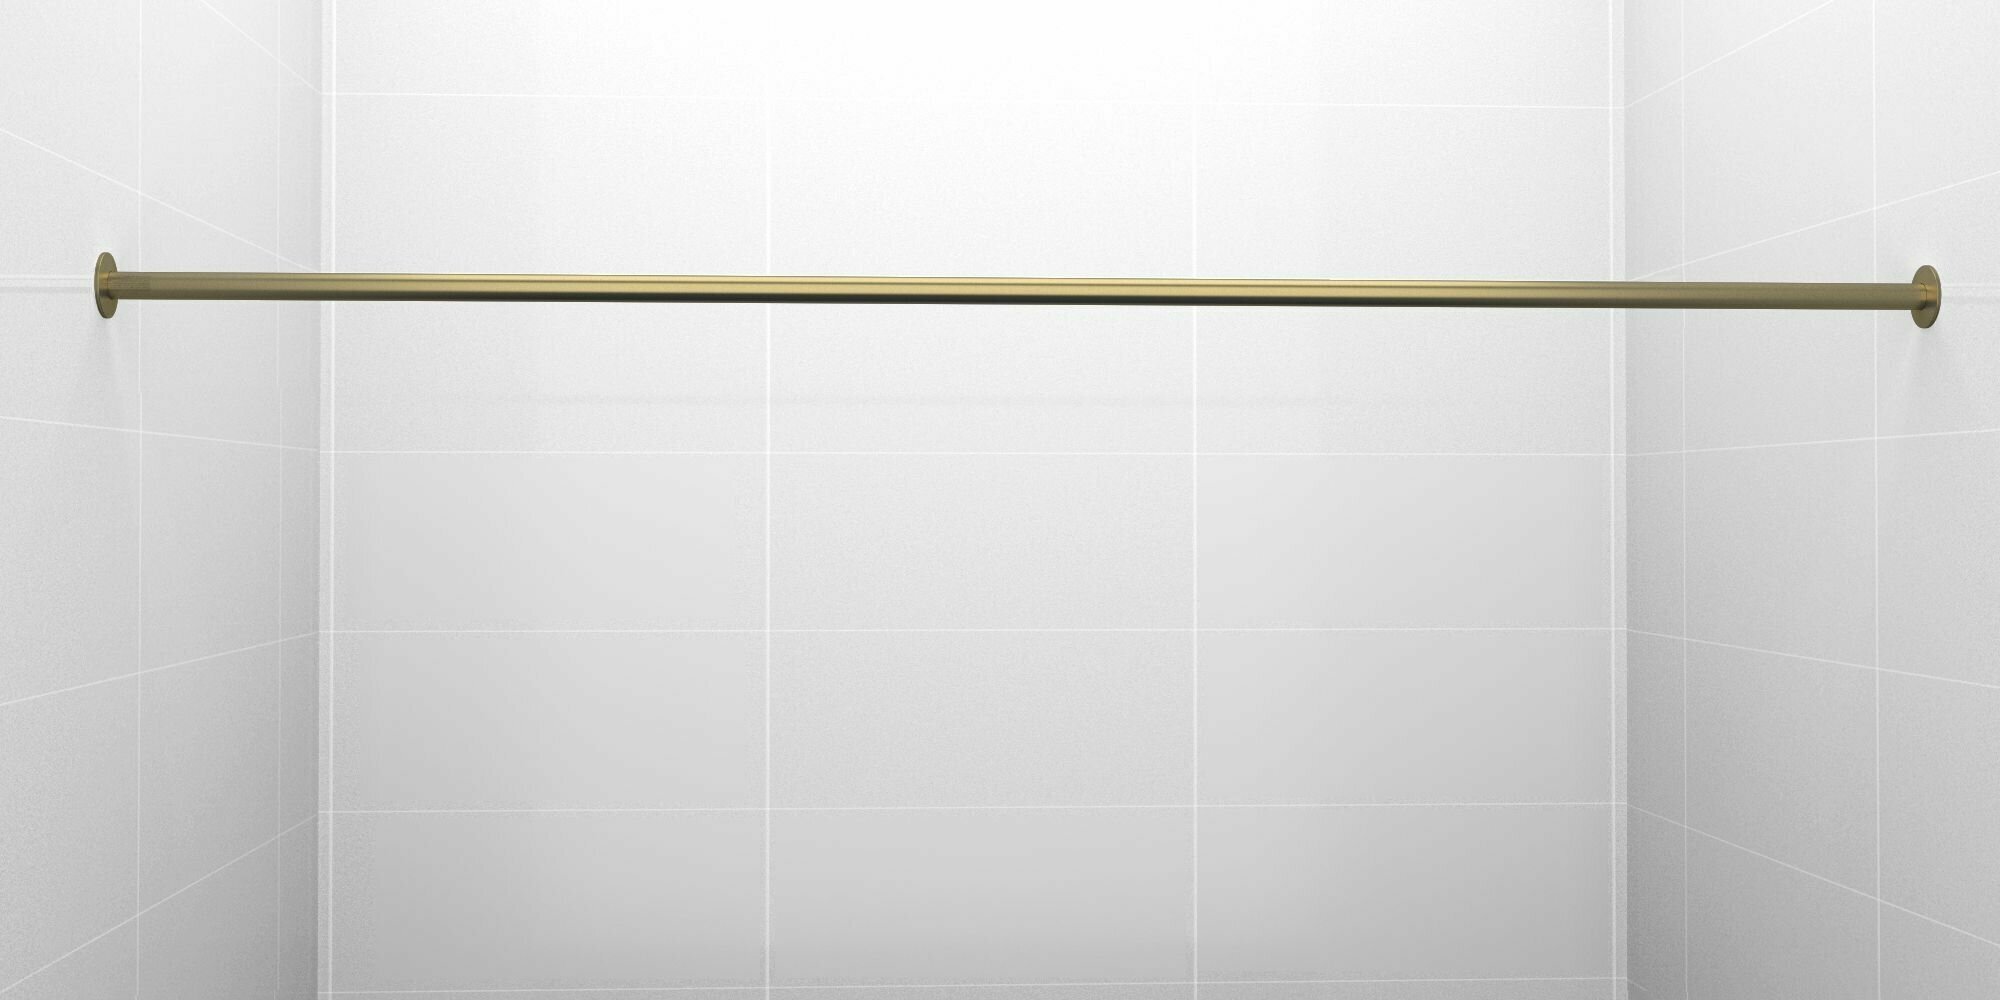 Карниз для ванной 200см (Штанга 20мм) Прямой Усиленный крепление 10см цельный из нержавейки цвет бронза